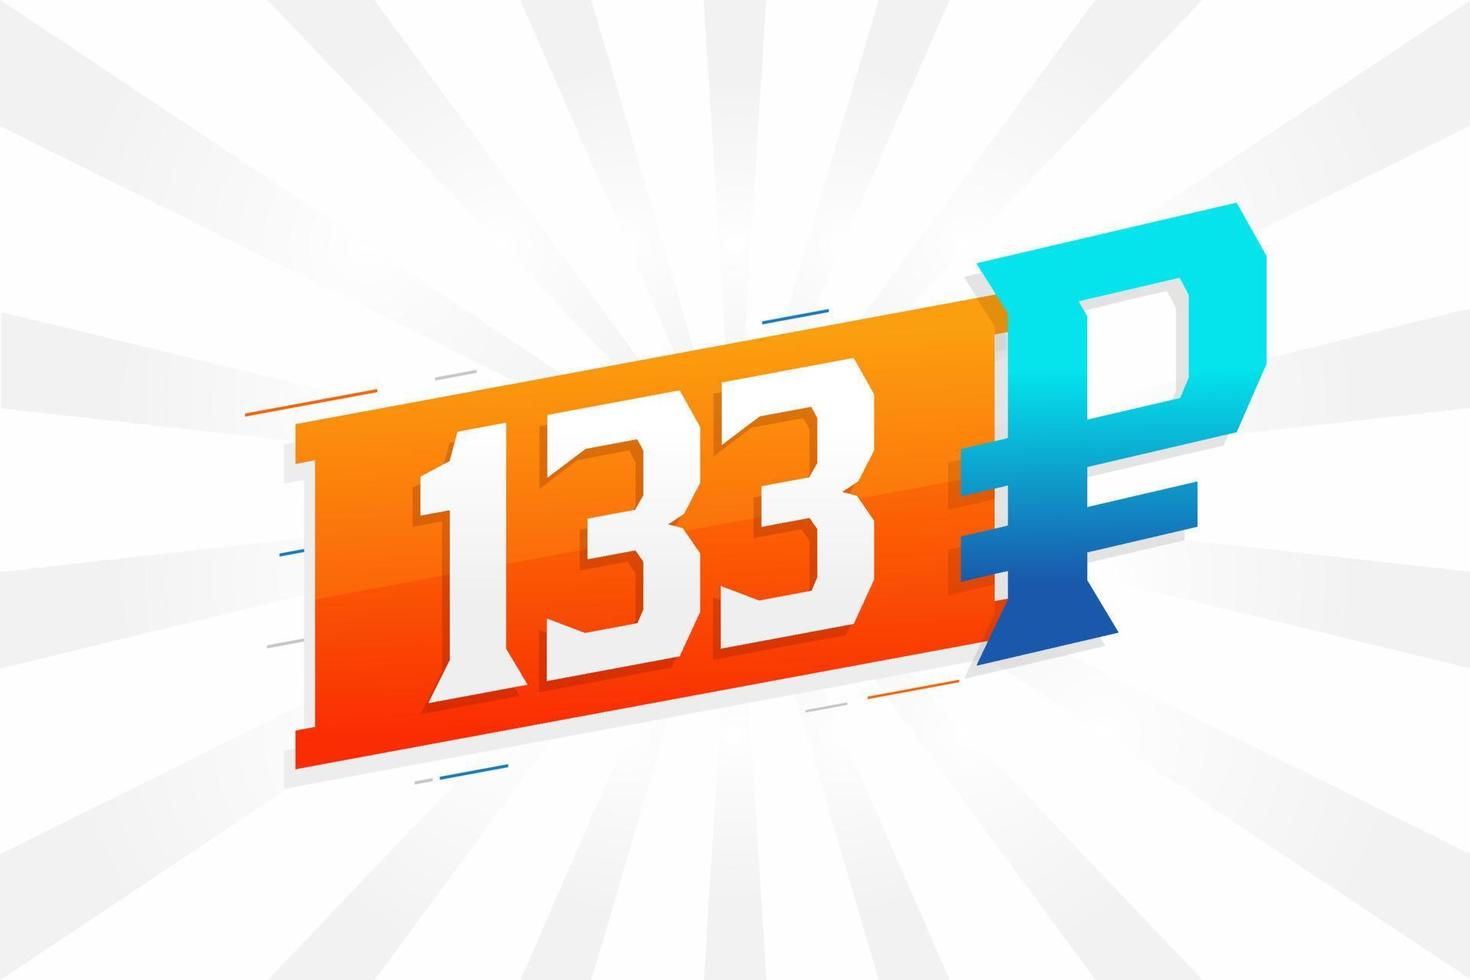 133 symbole rouble image vectorielle de texte en gras. 133 rouble russe monnaie signe illustration vectorielle vecteur